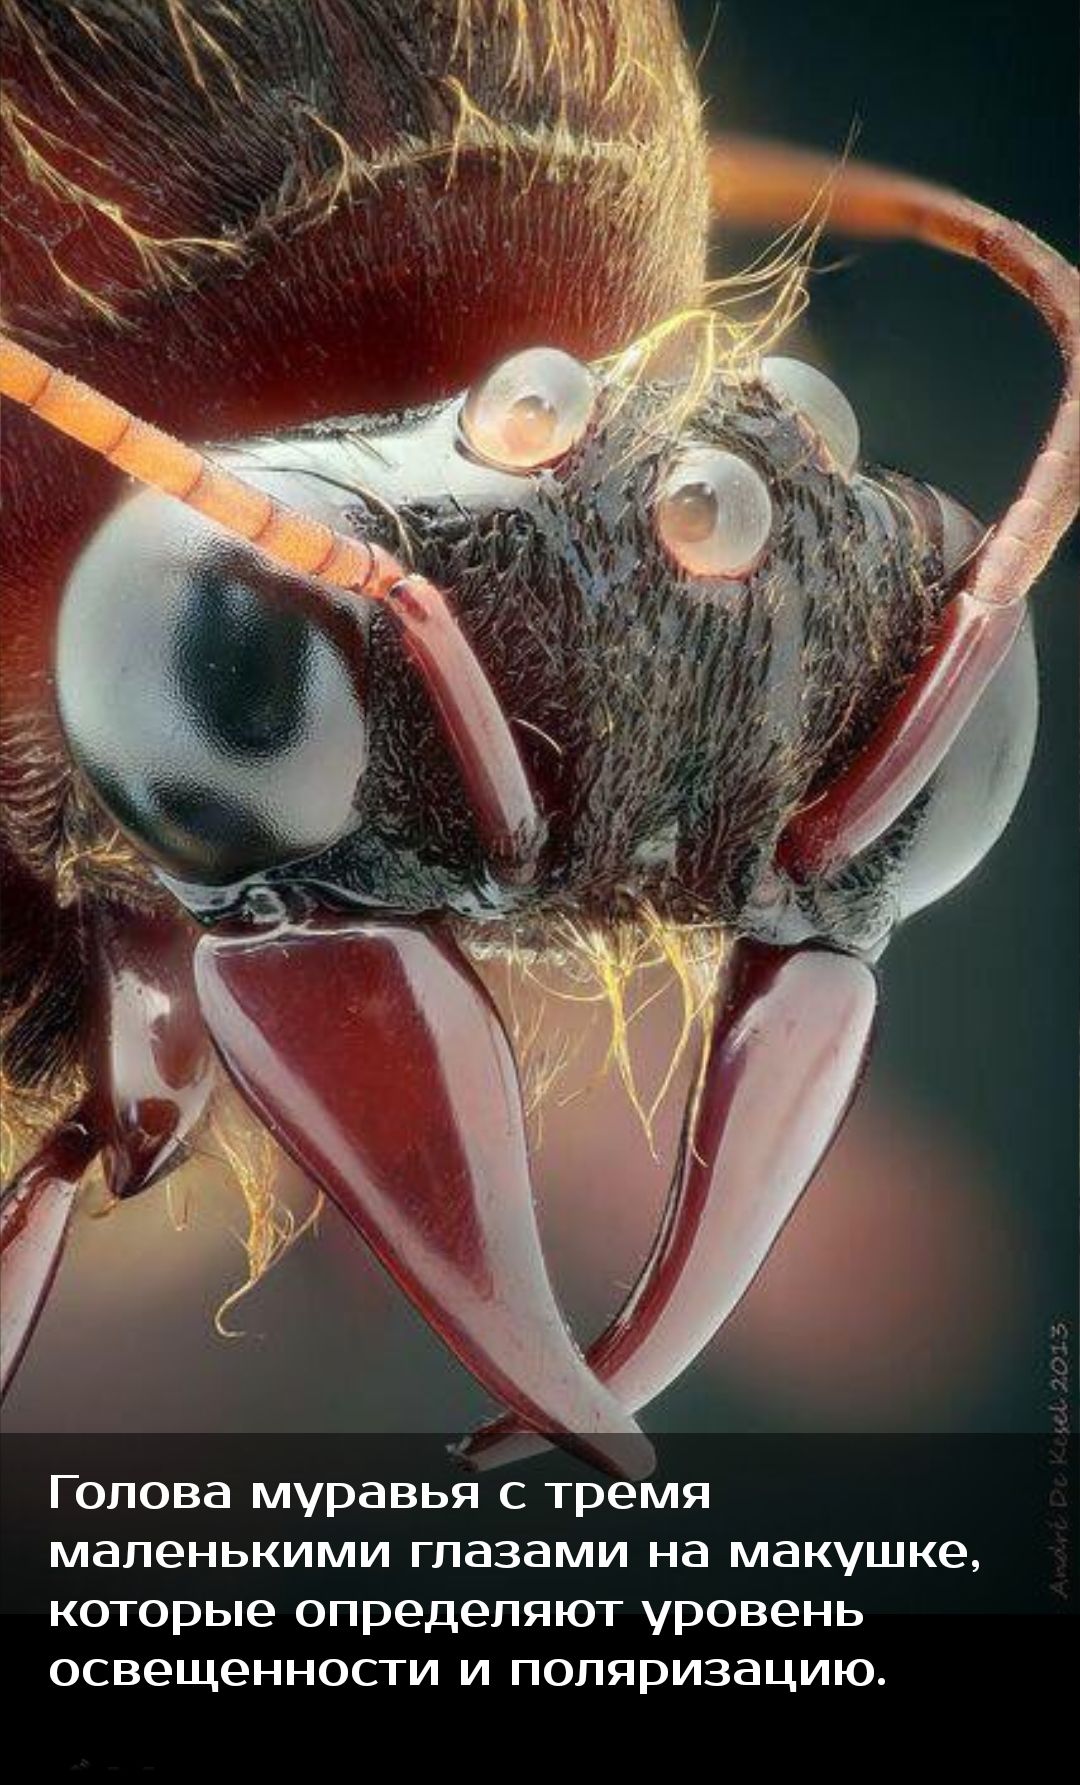 Страшный мир насекомых. Челюсти насекомых. Зубы насекомых под микроскопом. Страшные насекомые под микроскопом.